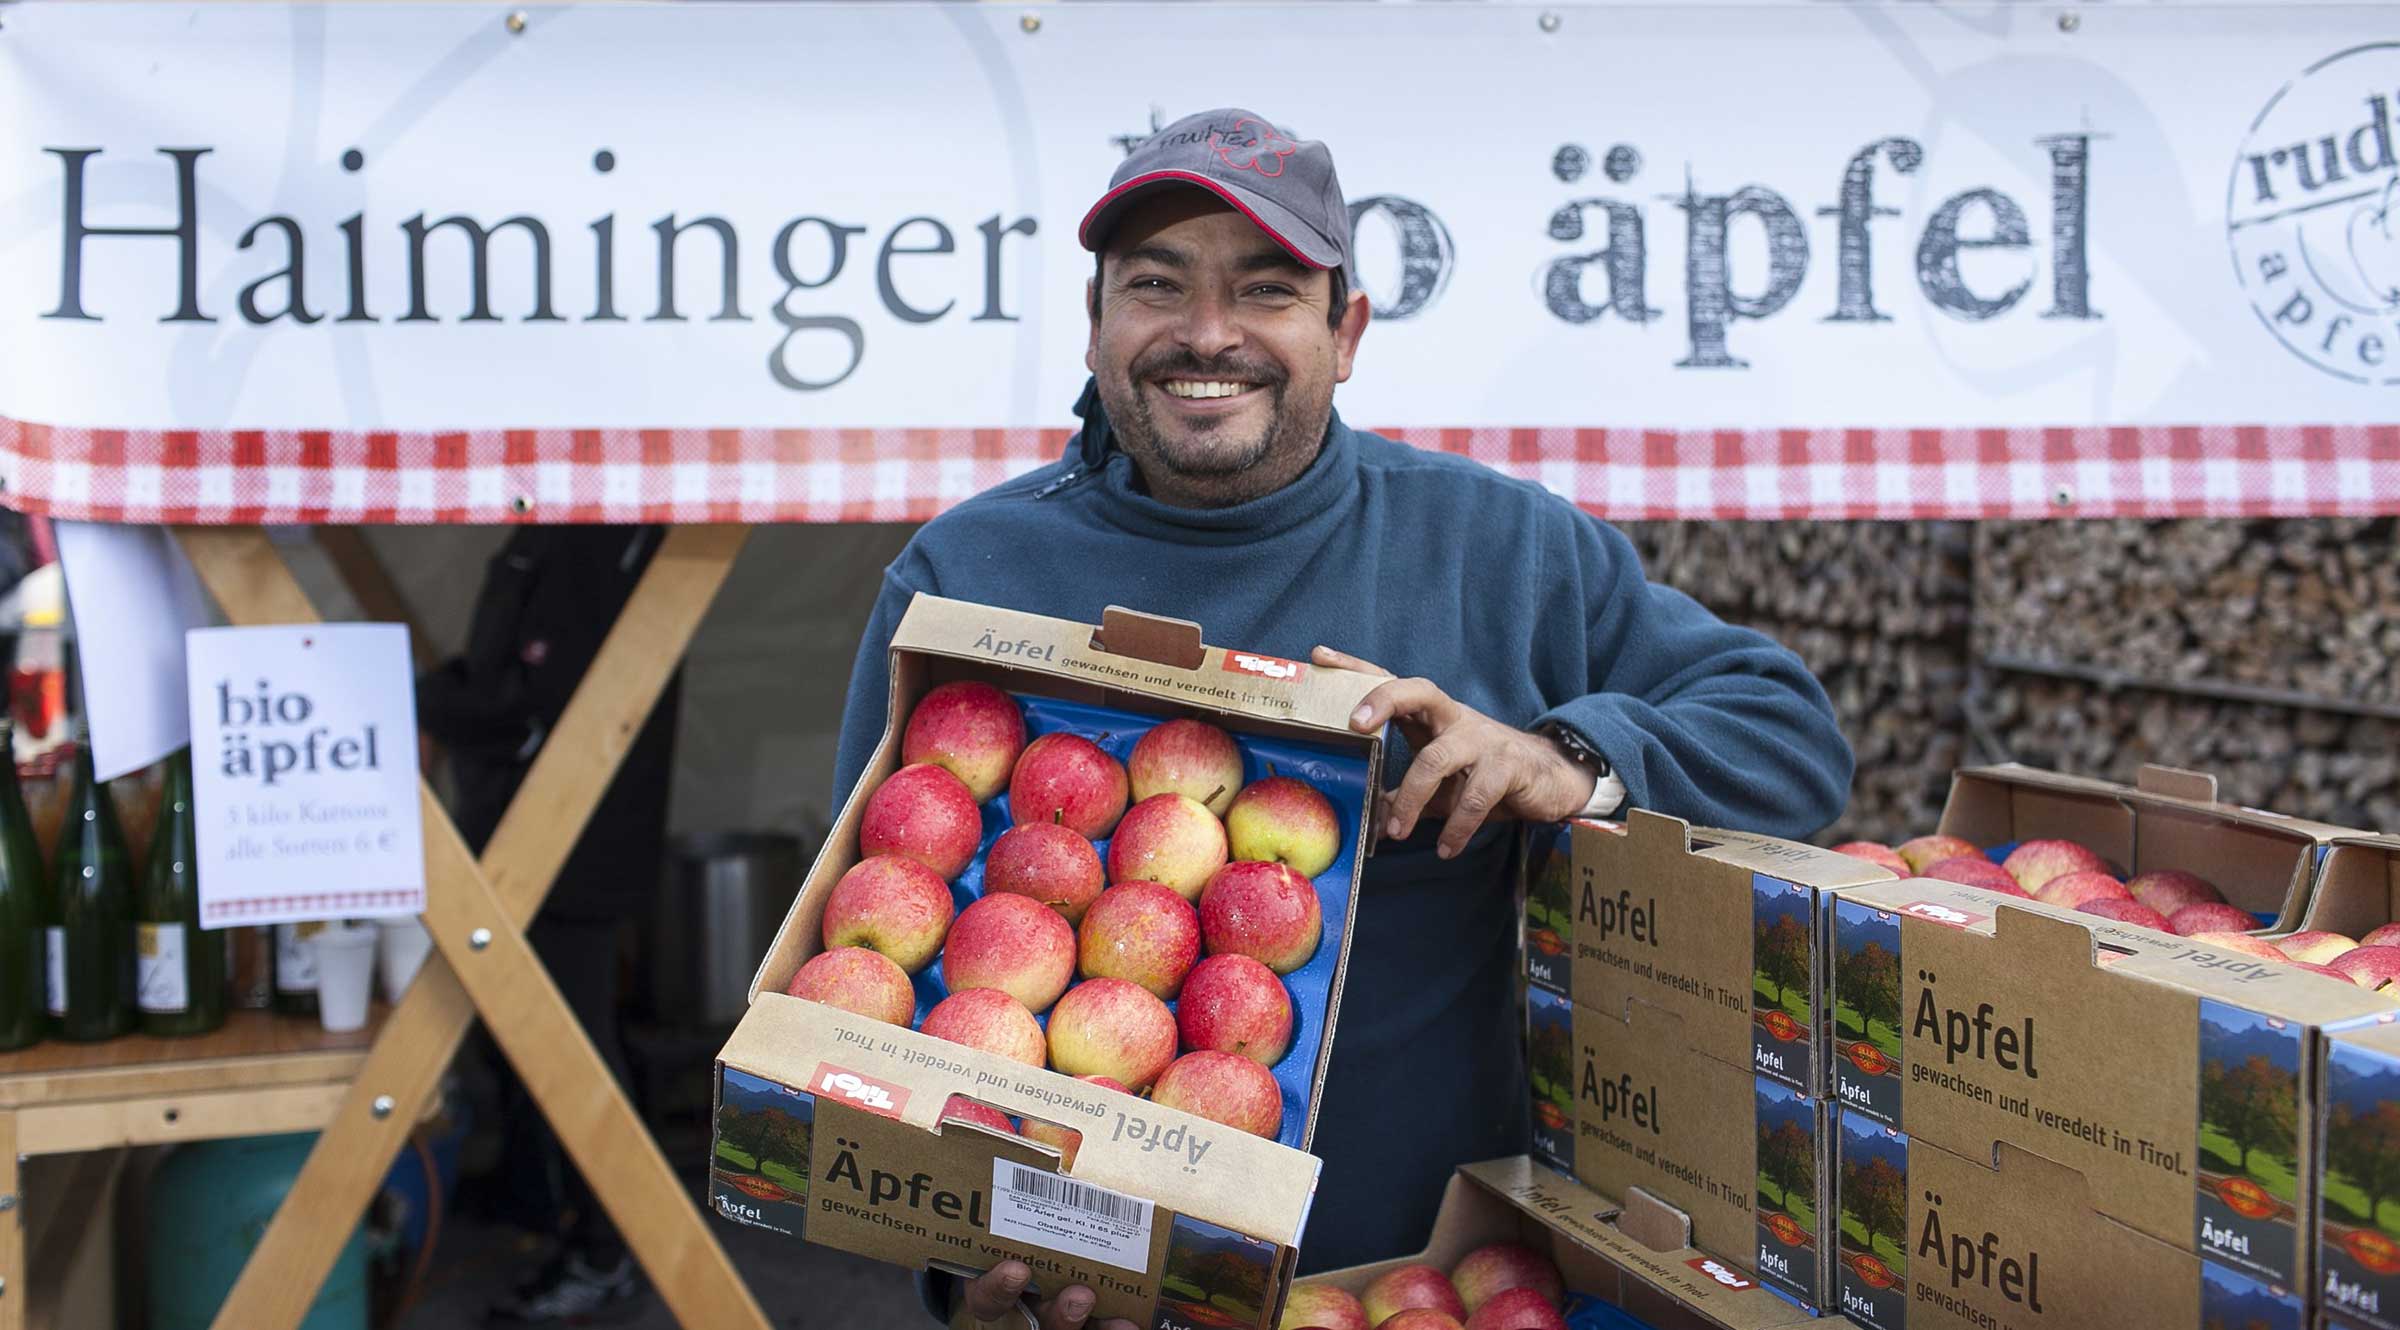 Obstbauer präsentiert stolz Ernte - Haiminger Markttage